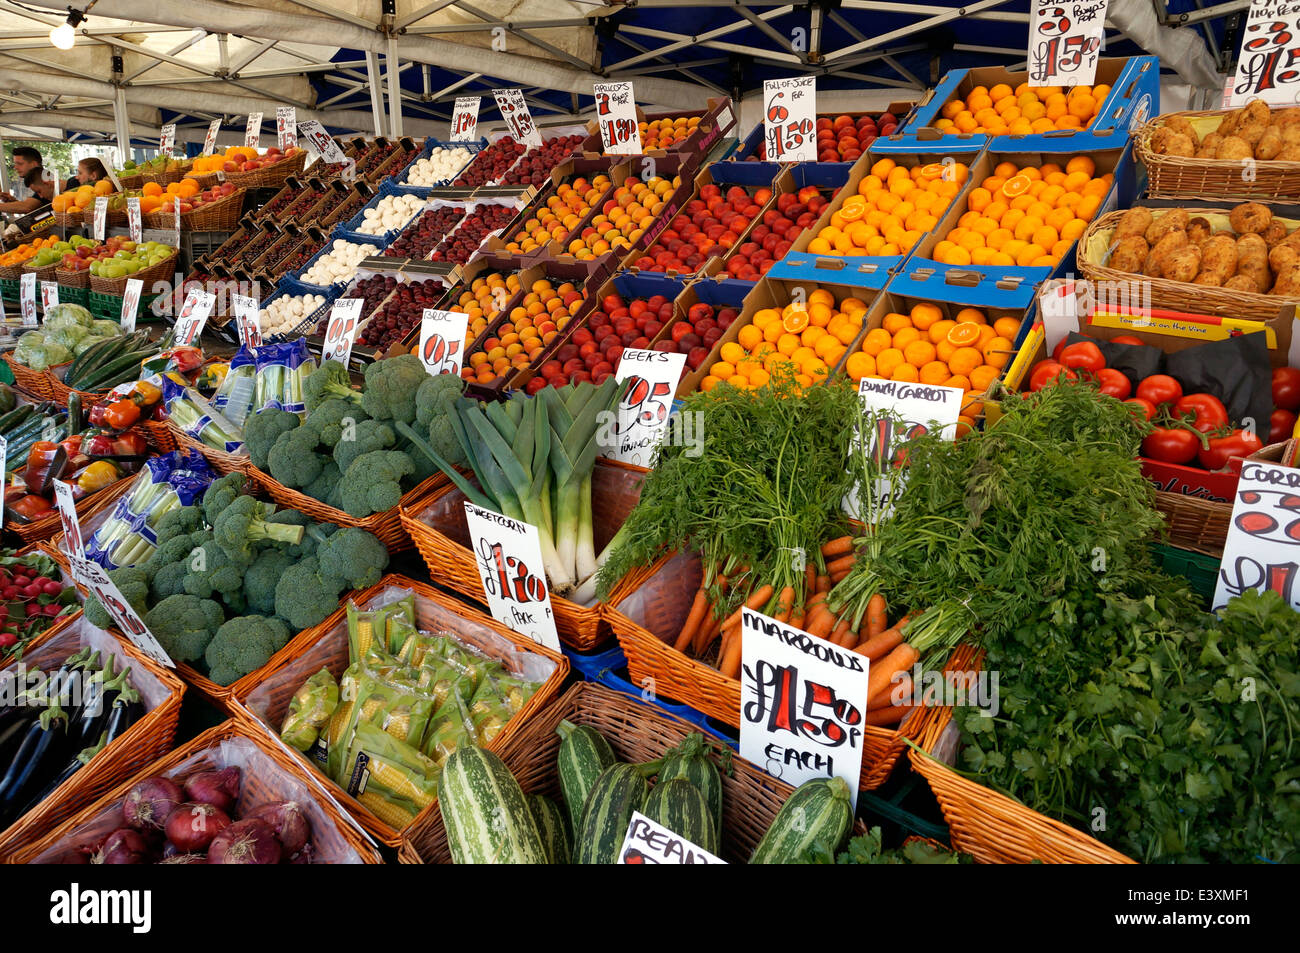 Fruit & vegetable market stall Worthing West Sussex UK Stock Photo